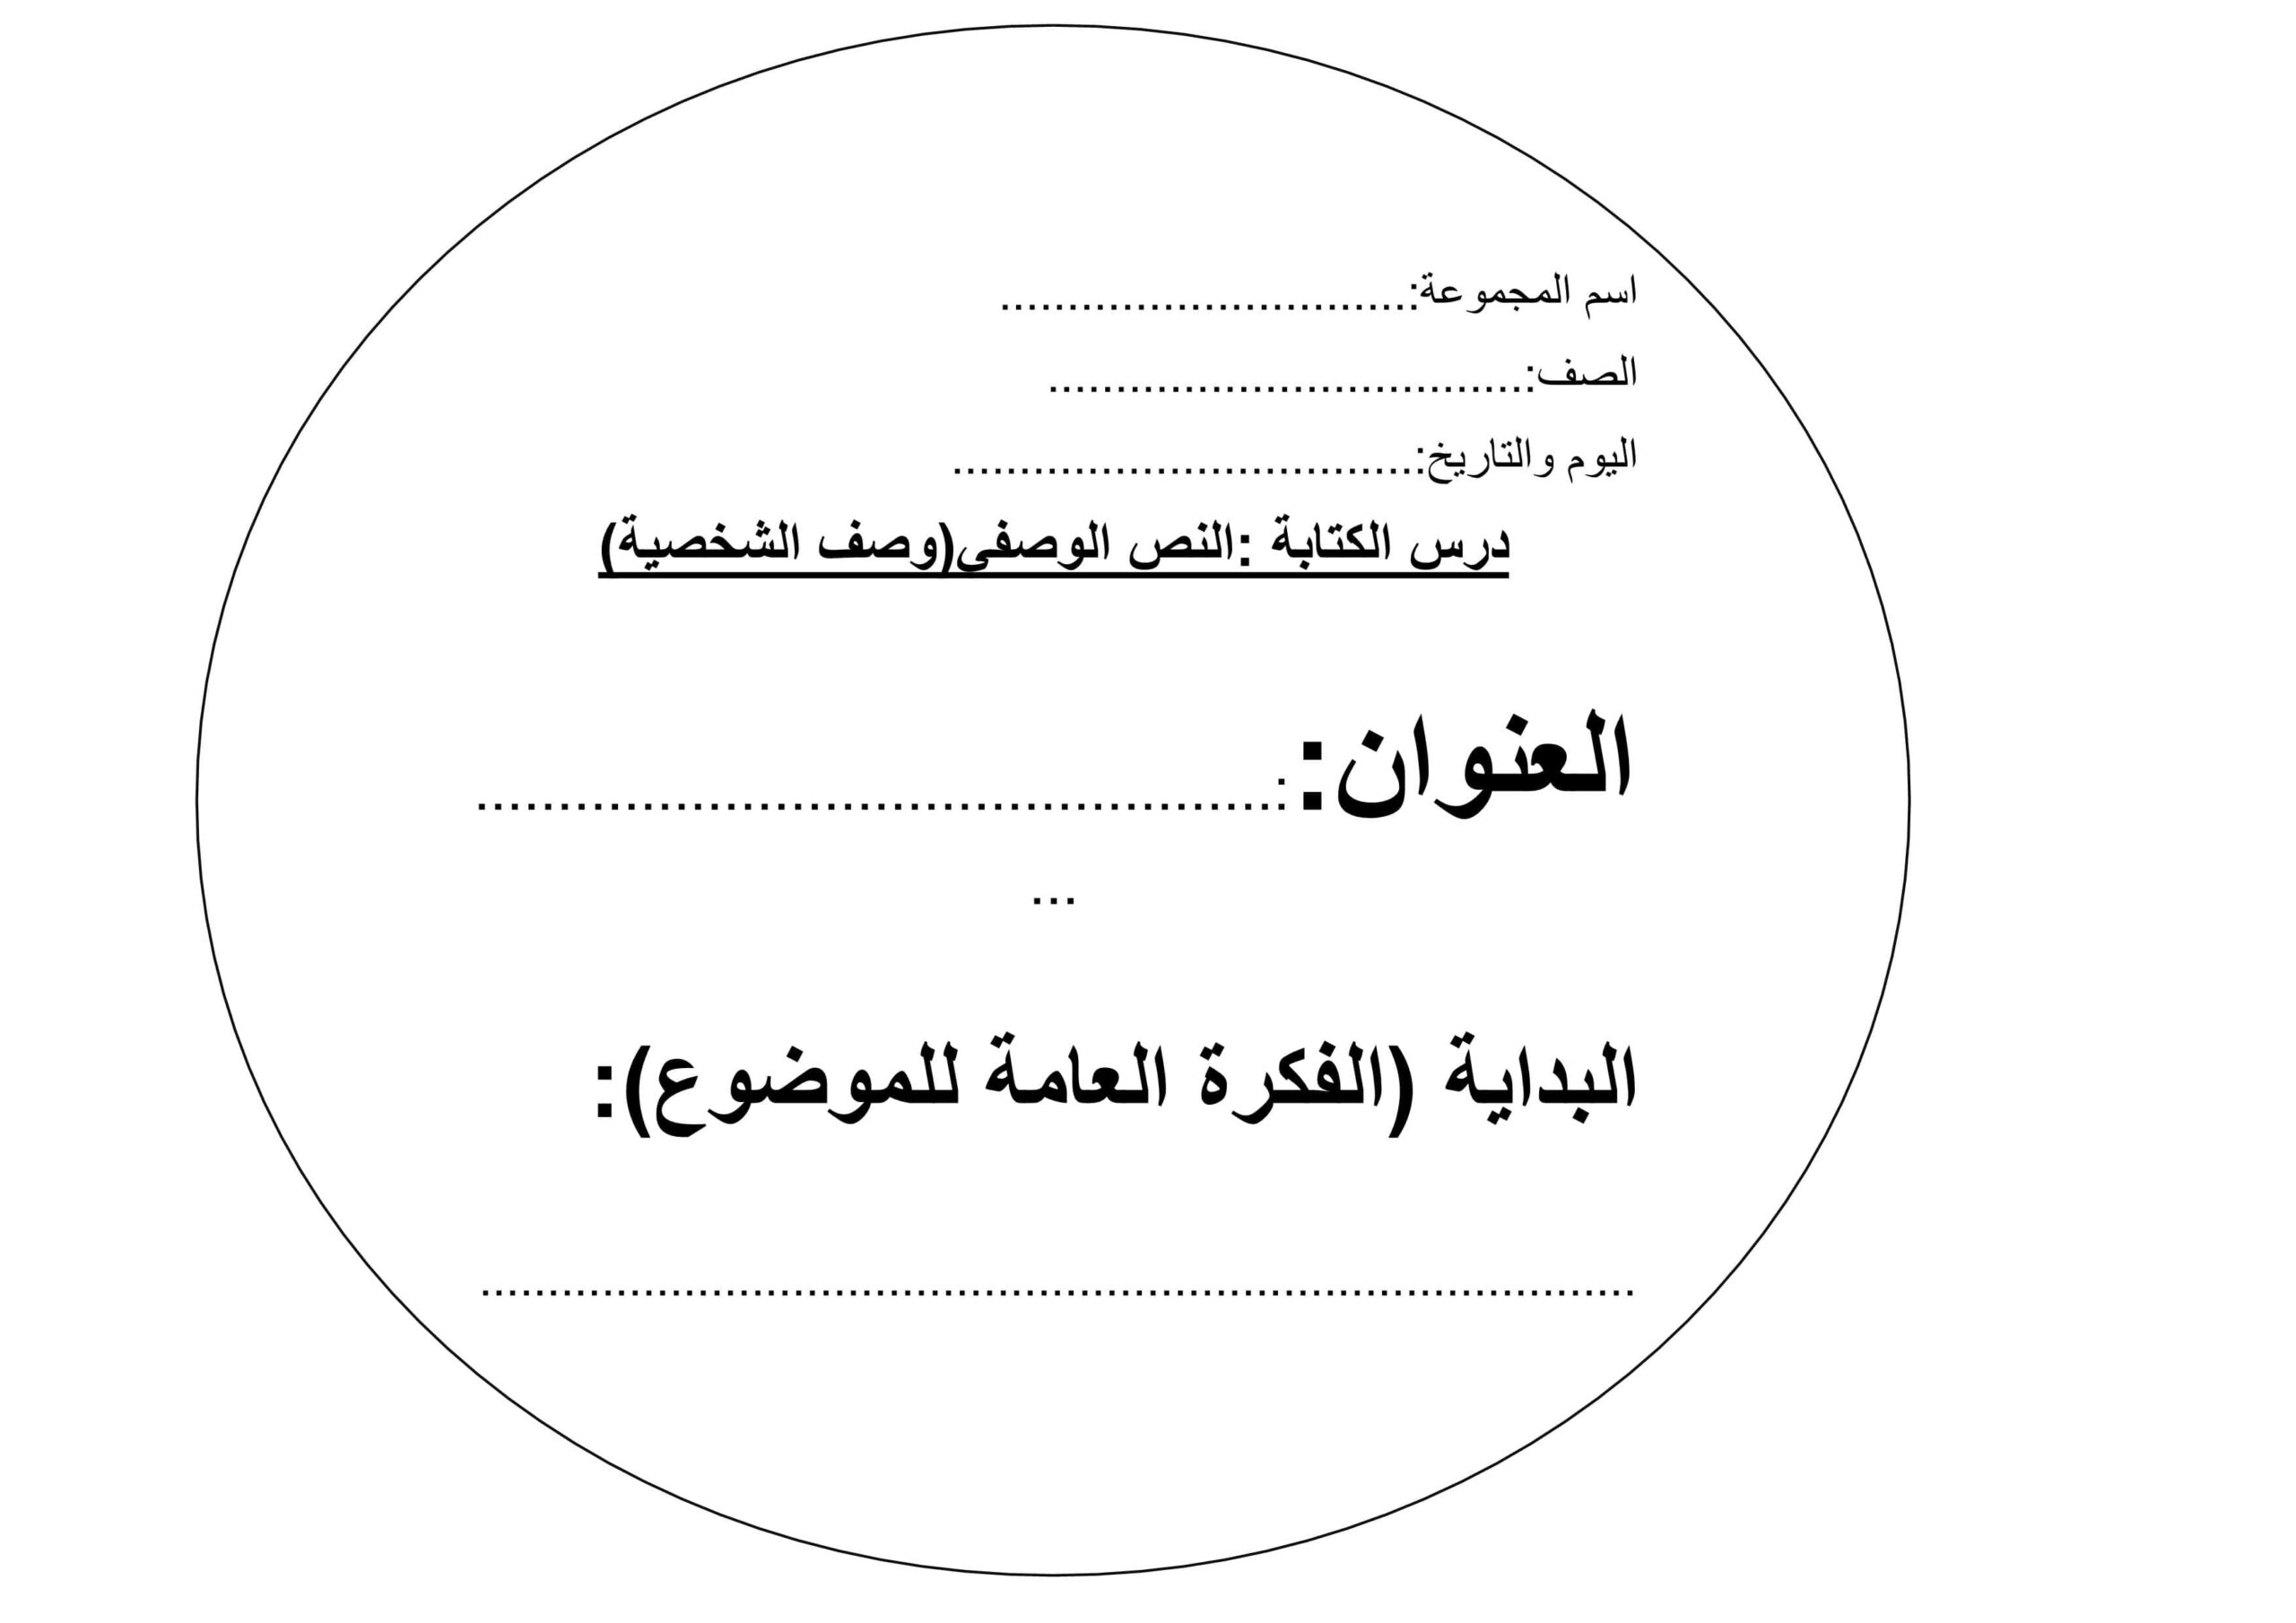 درس الكتابة النص الوصفي وصف الشخصية اللغة العربية الصف الثالث